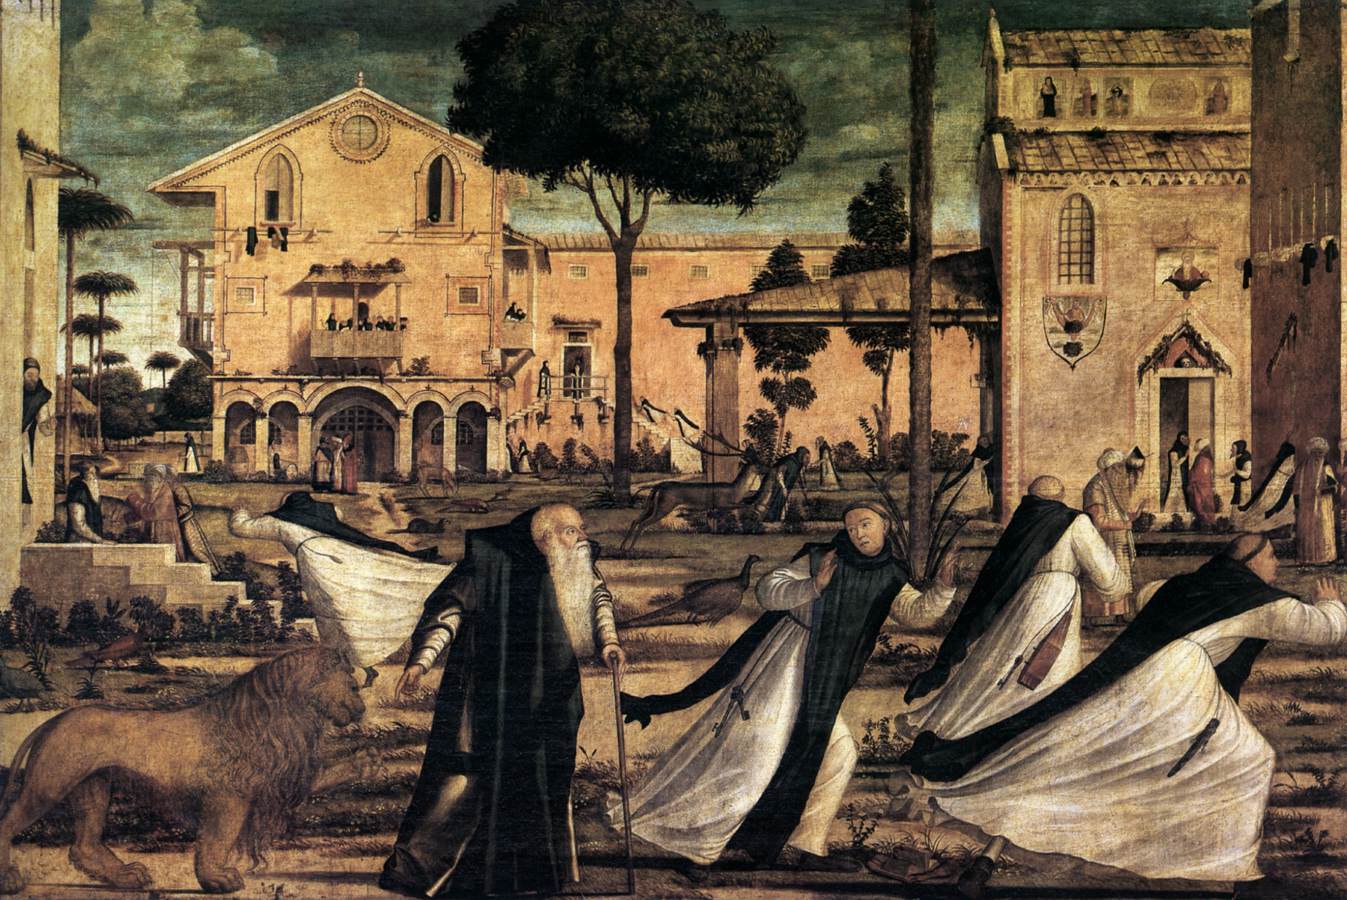 San Jerónimo ed El León